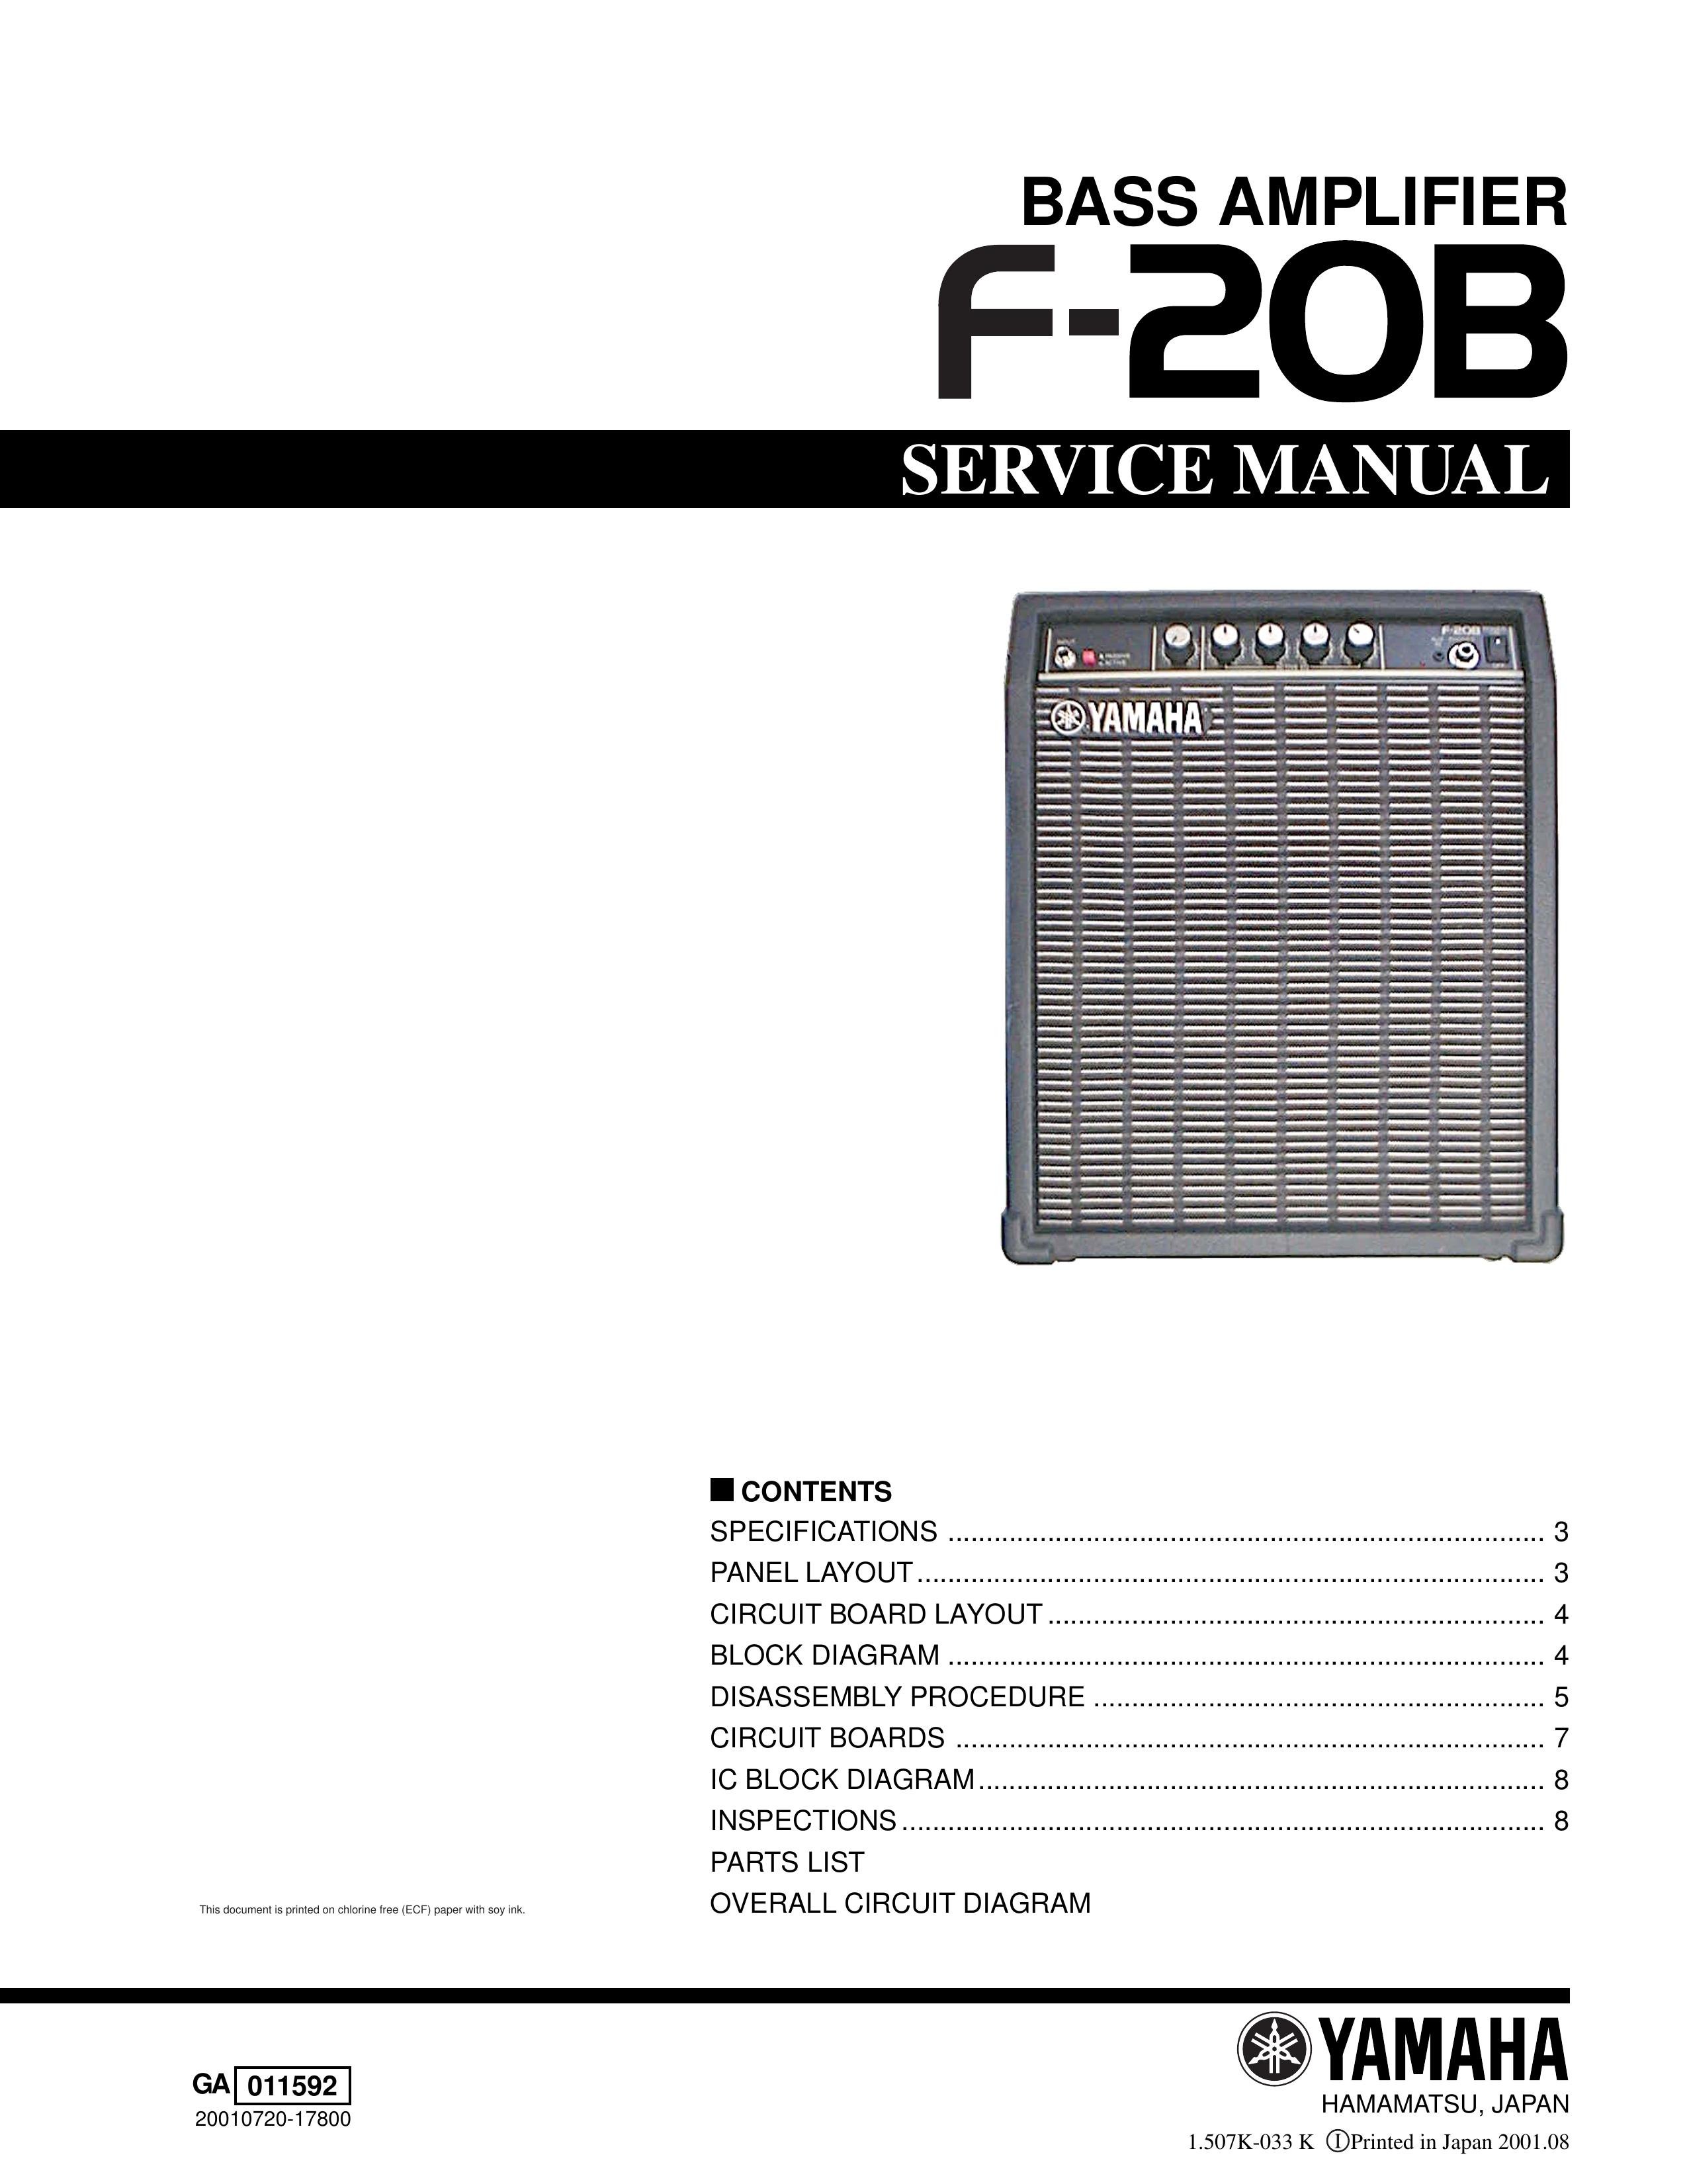 Yamaha Bass Amplifier Musical Instrument Amplifier User Manual